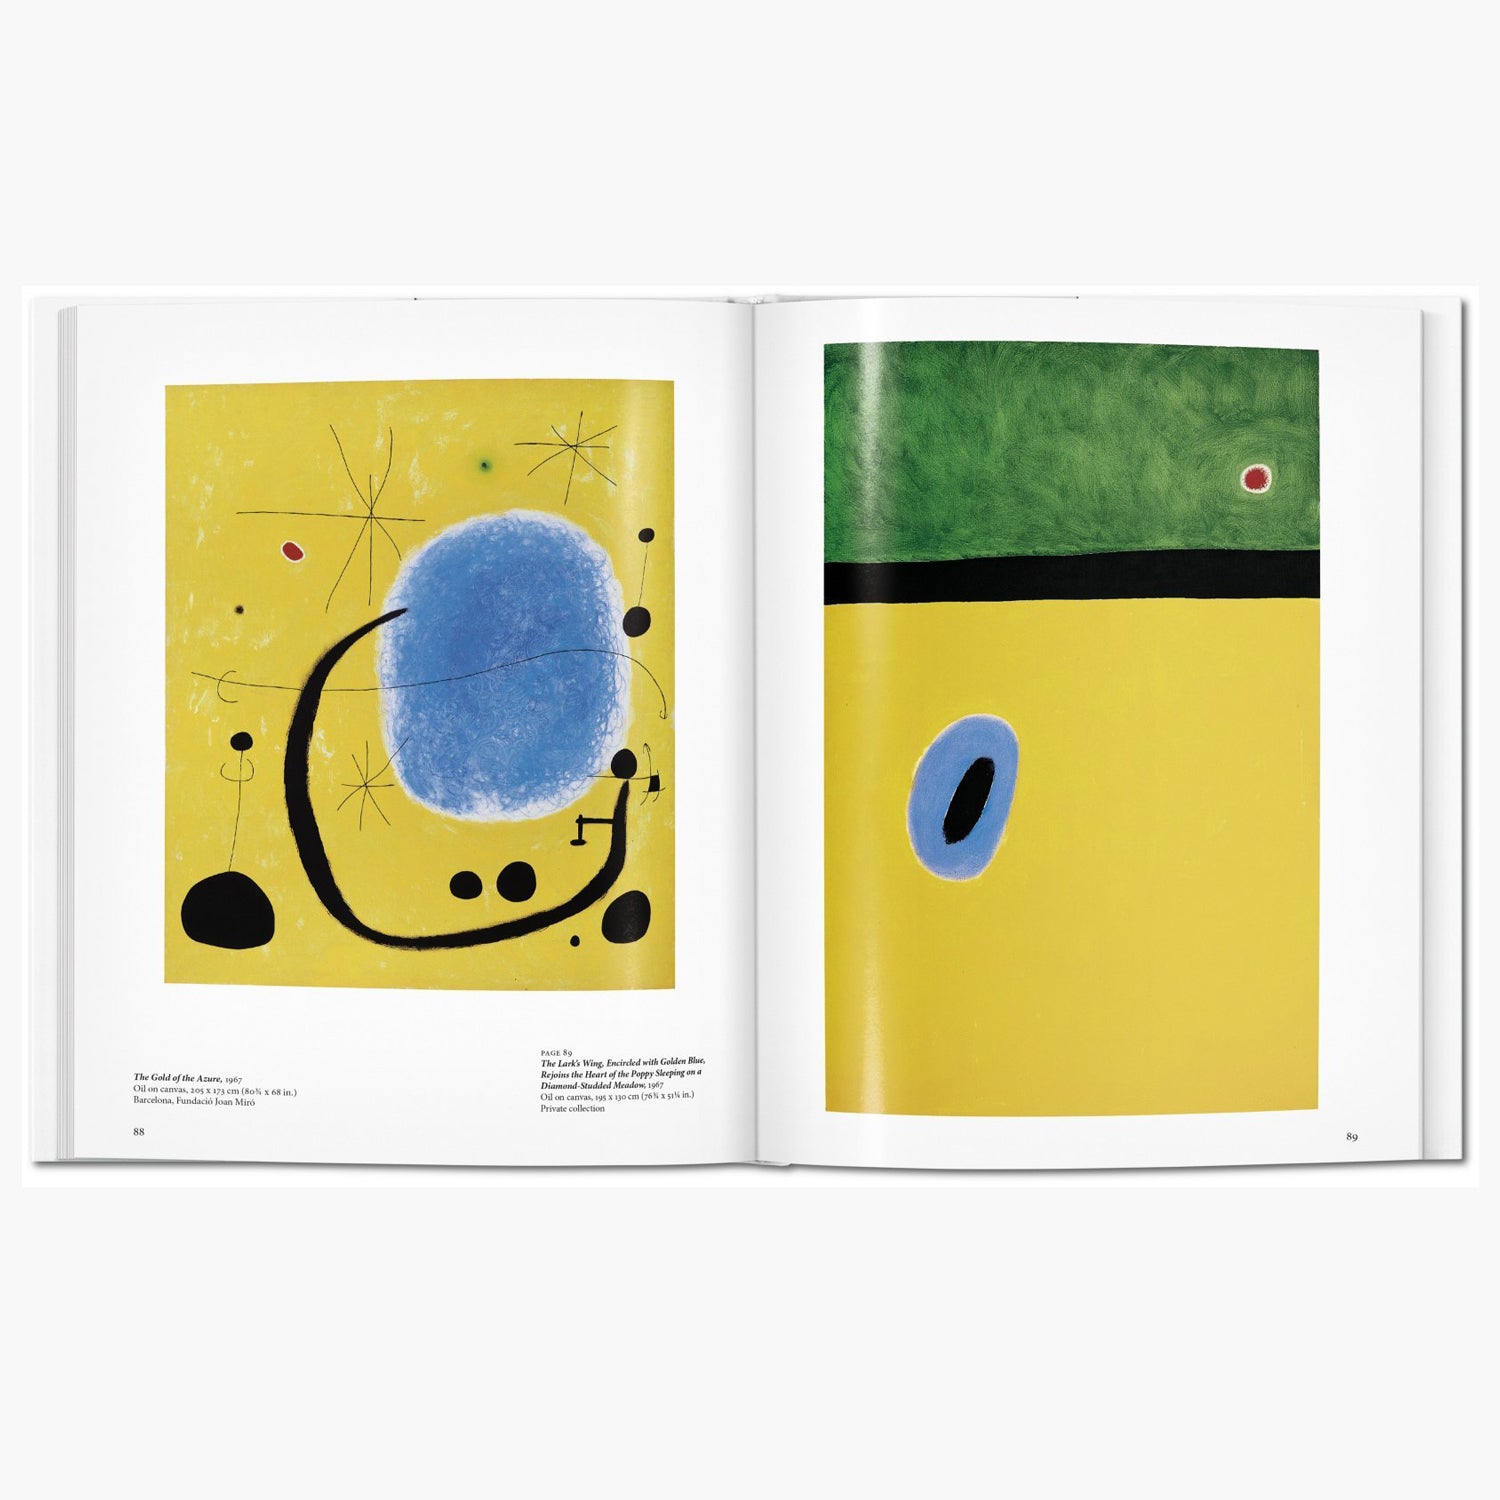 Taschen Miro Book – Basic Art Series